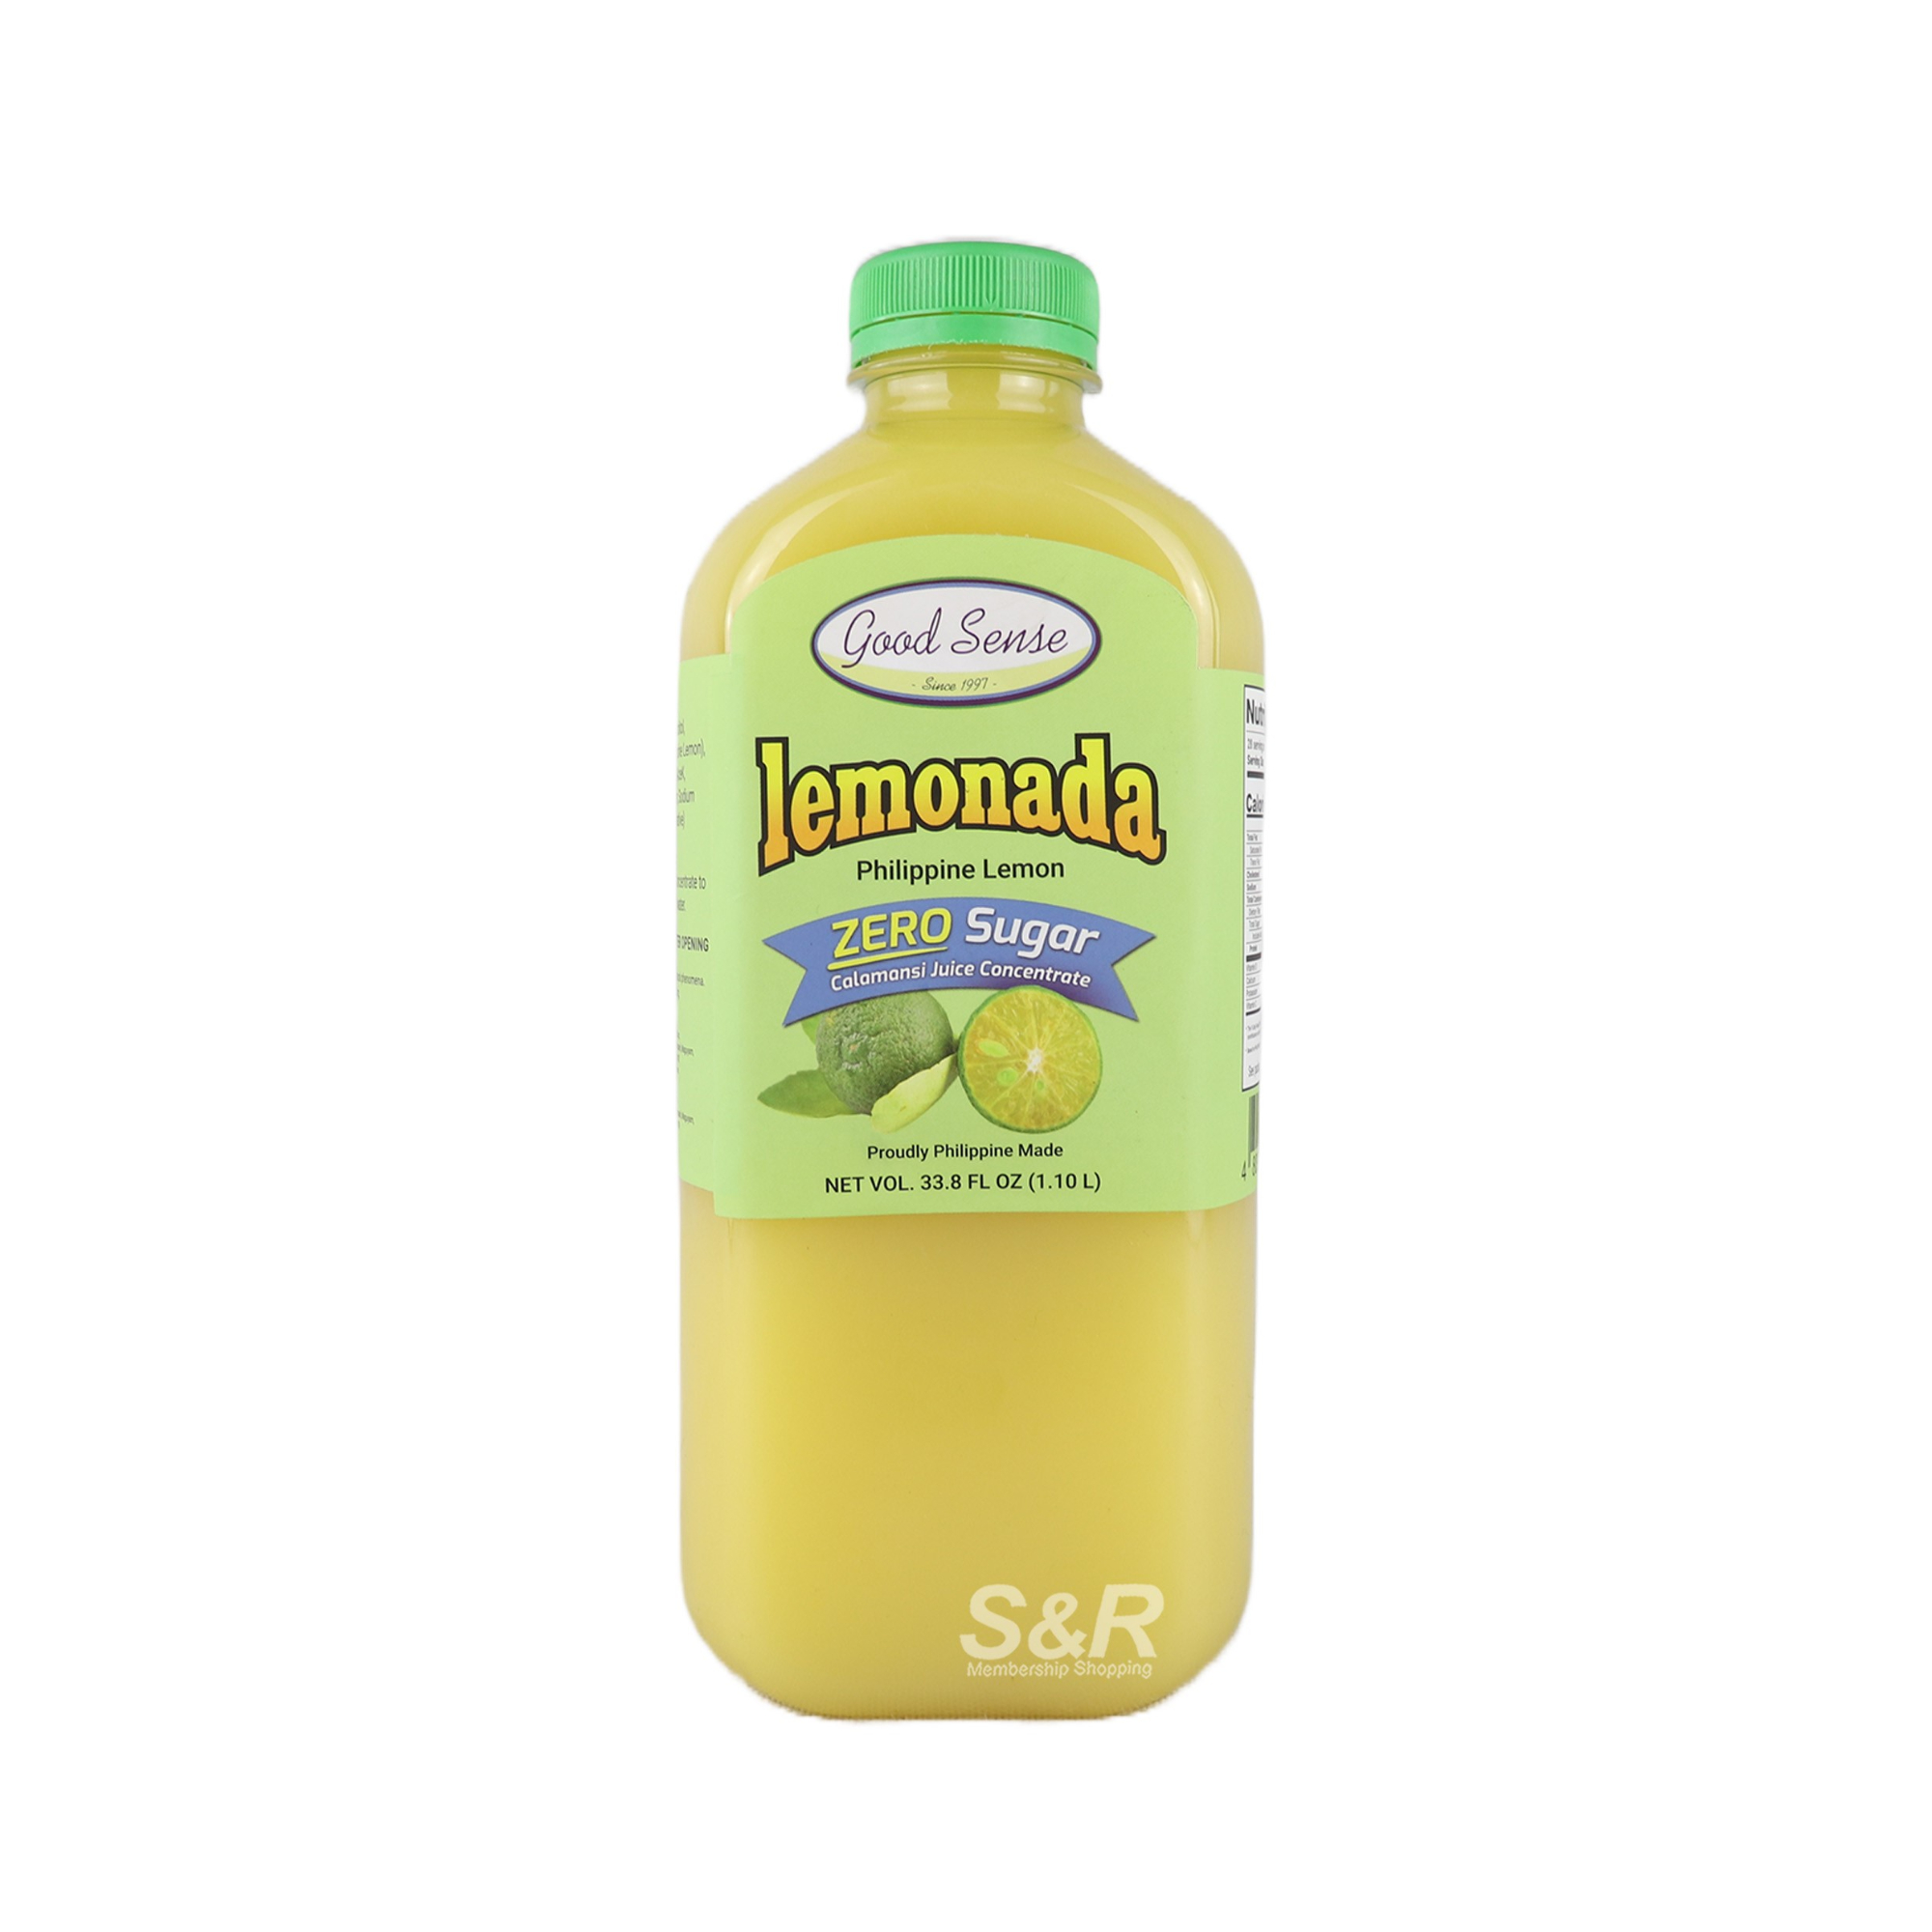 Good Sense Lemonada Zero Sugar Calamansi Juice Concentrate 1.1L